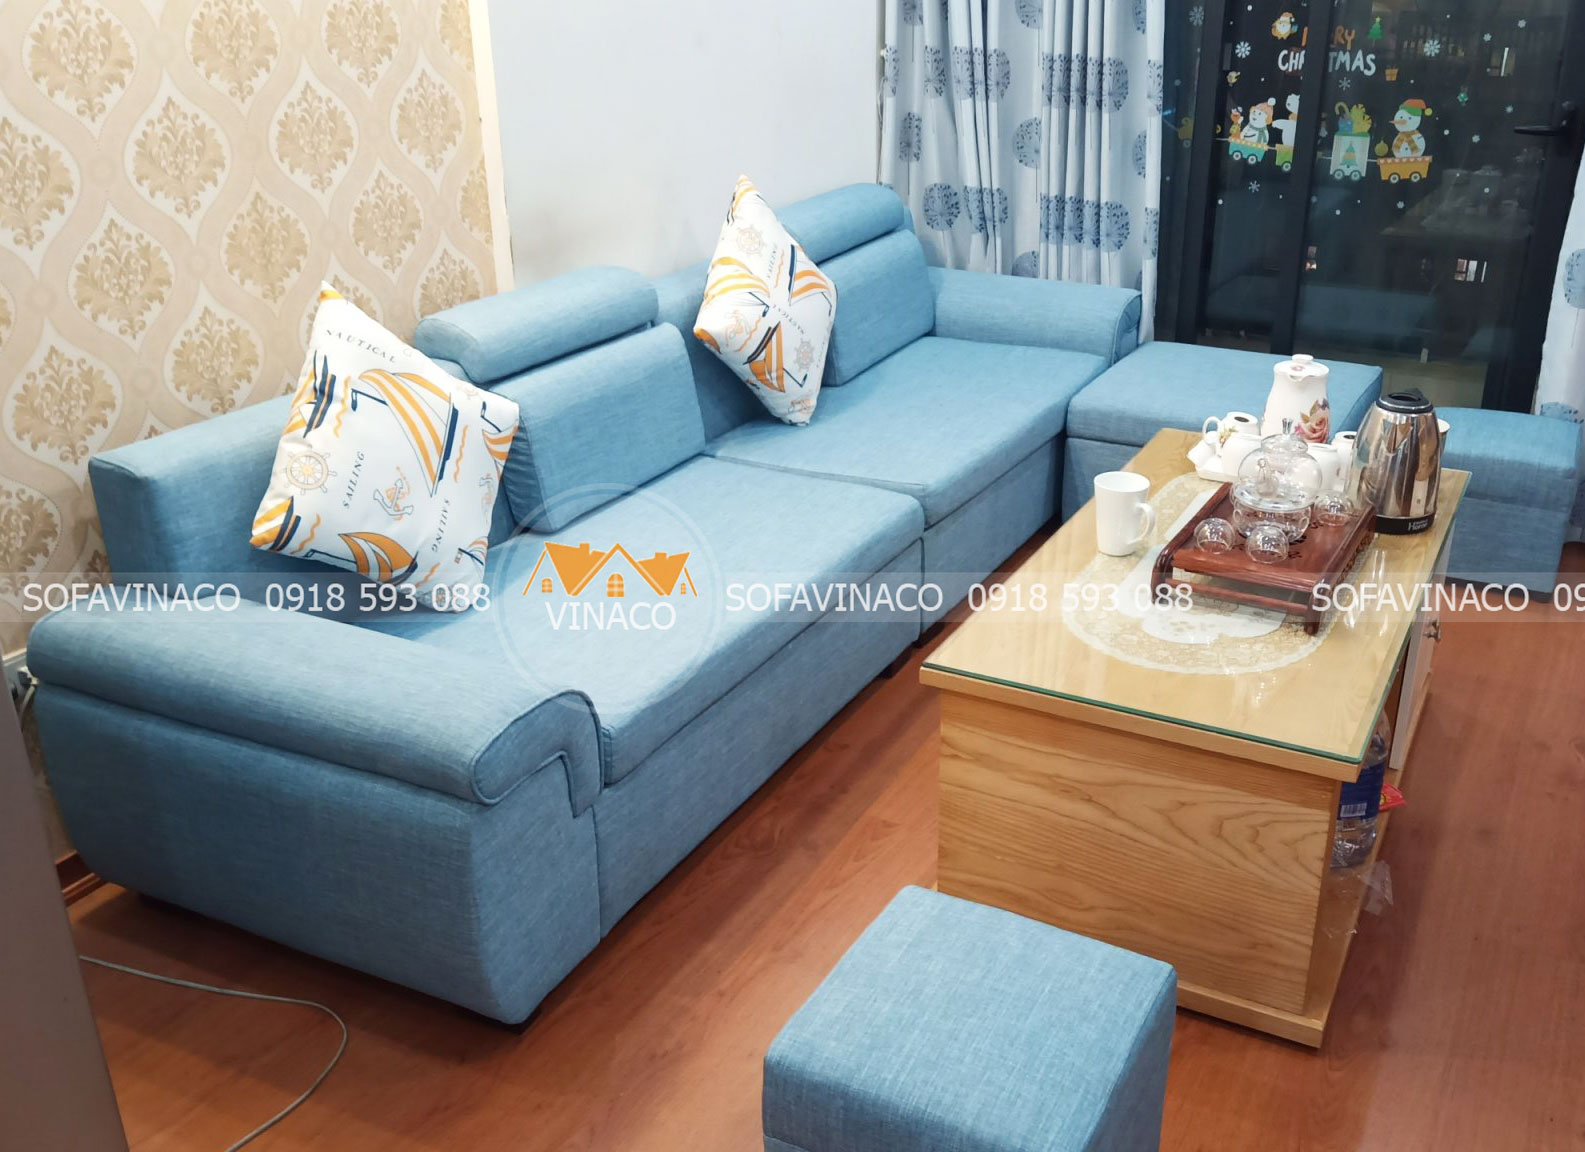 Dịch vụ bọc ghế tại nhà của Sofavinaco vượt xa dịch vụ bọc ghế sofa thông thường tại TPHCM